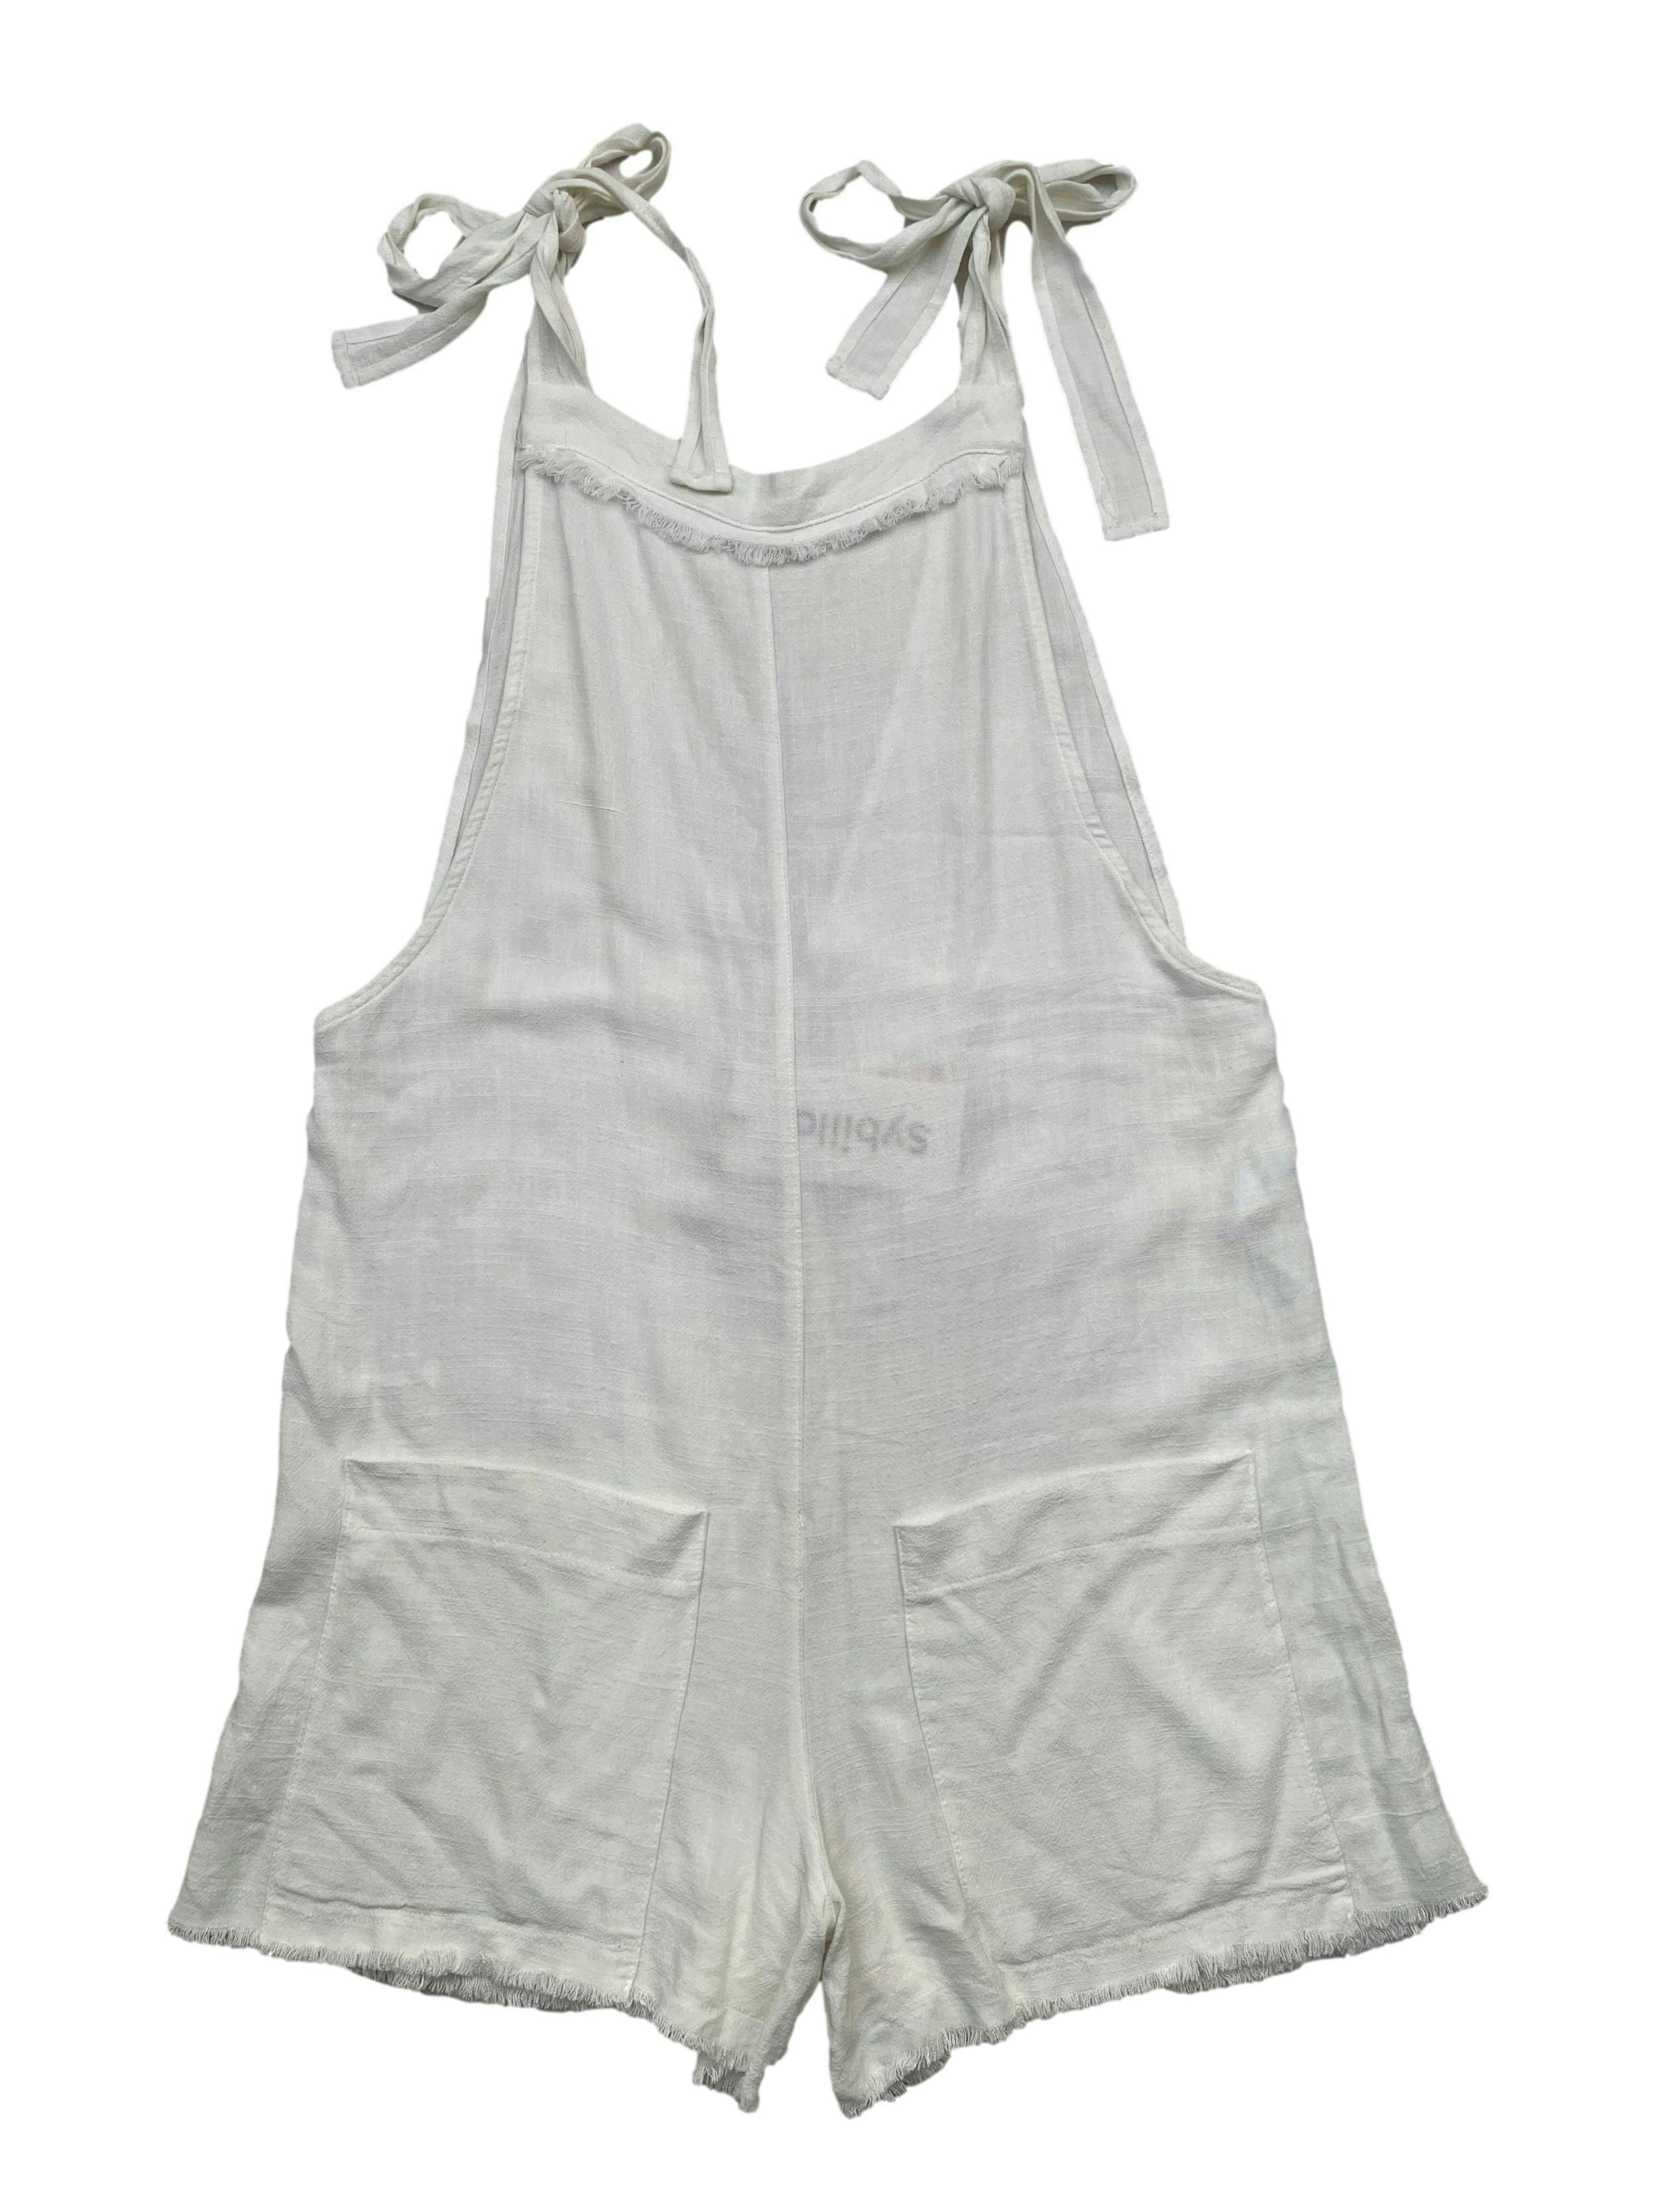 Jardinera de lino ,tiras para amarrar , bolsillos , escote en V en espalda. Largo 78 cm. Nuevo con etiqueta.